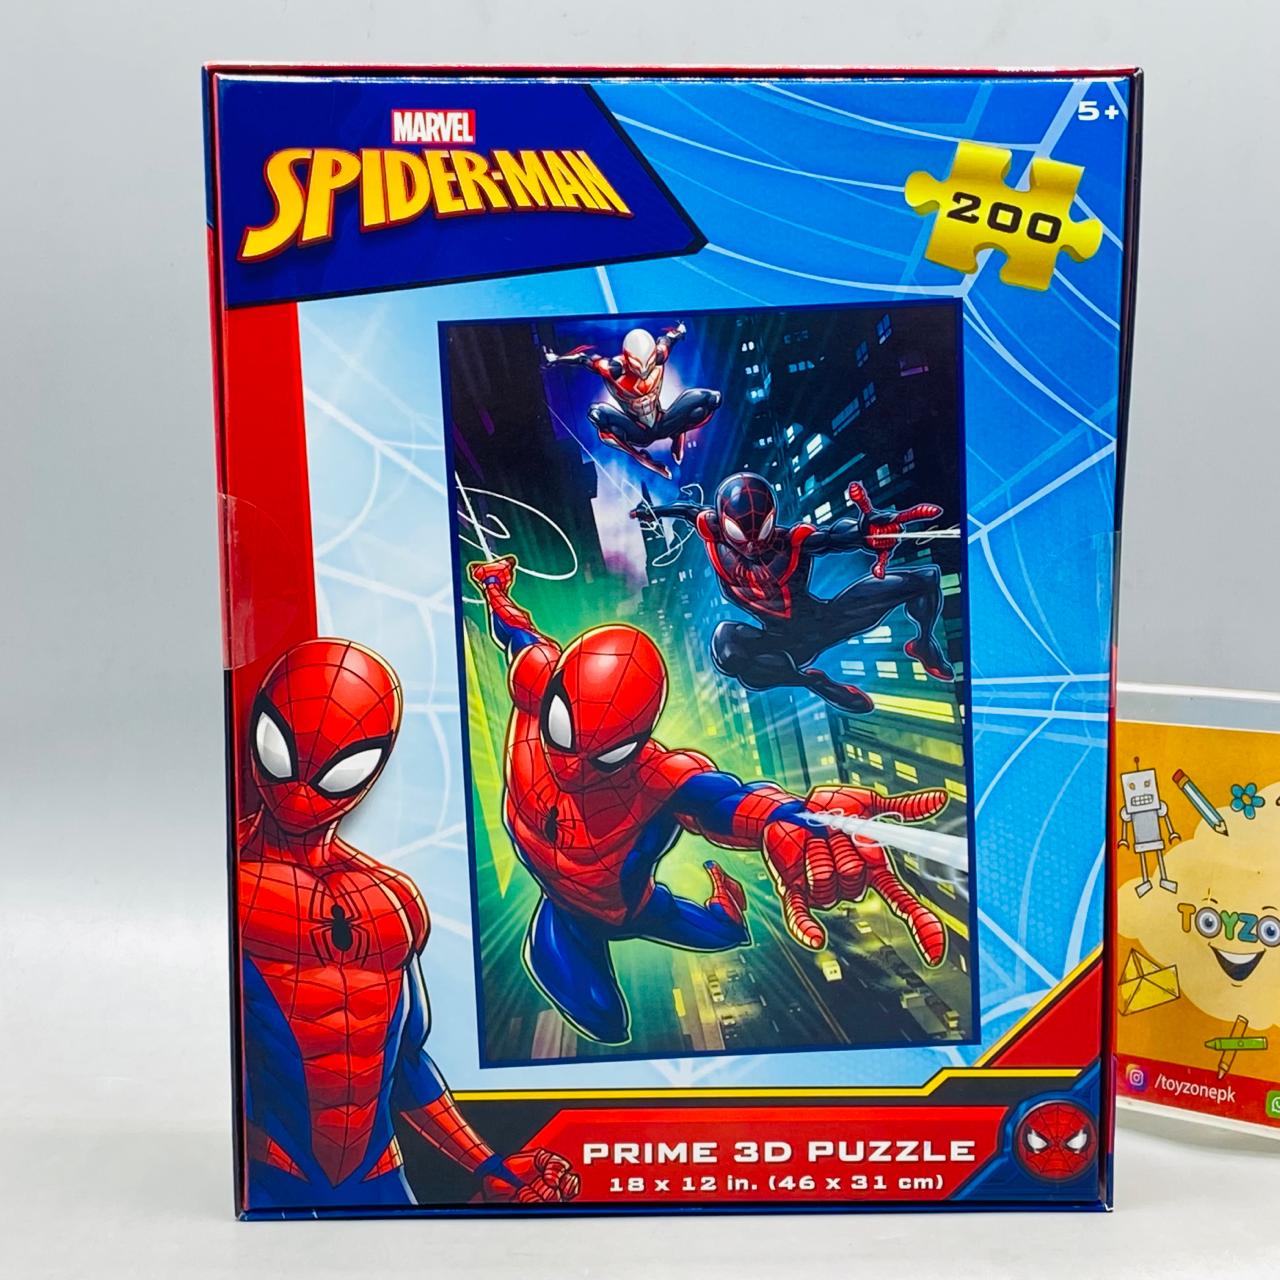 Spiderman Prime 3D Puzzle Game